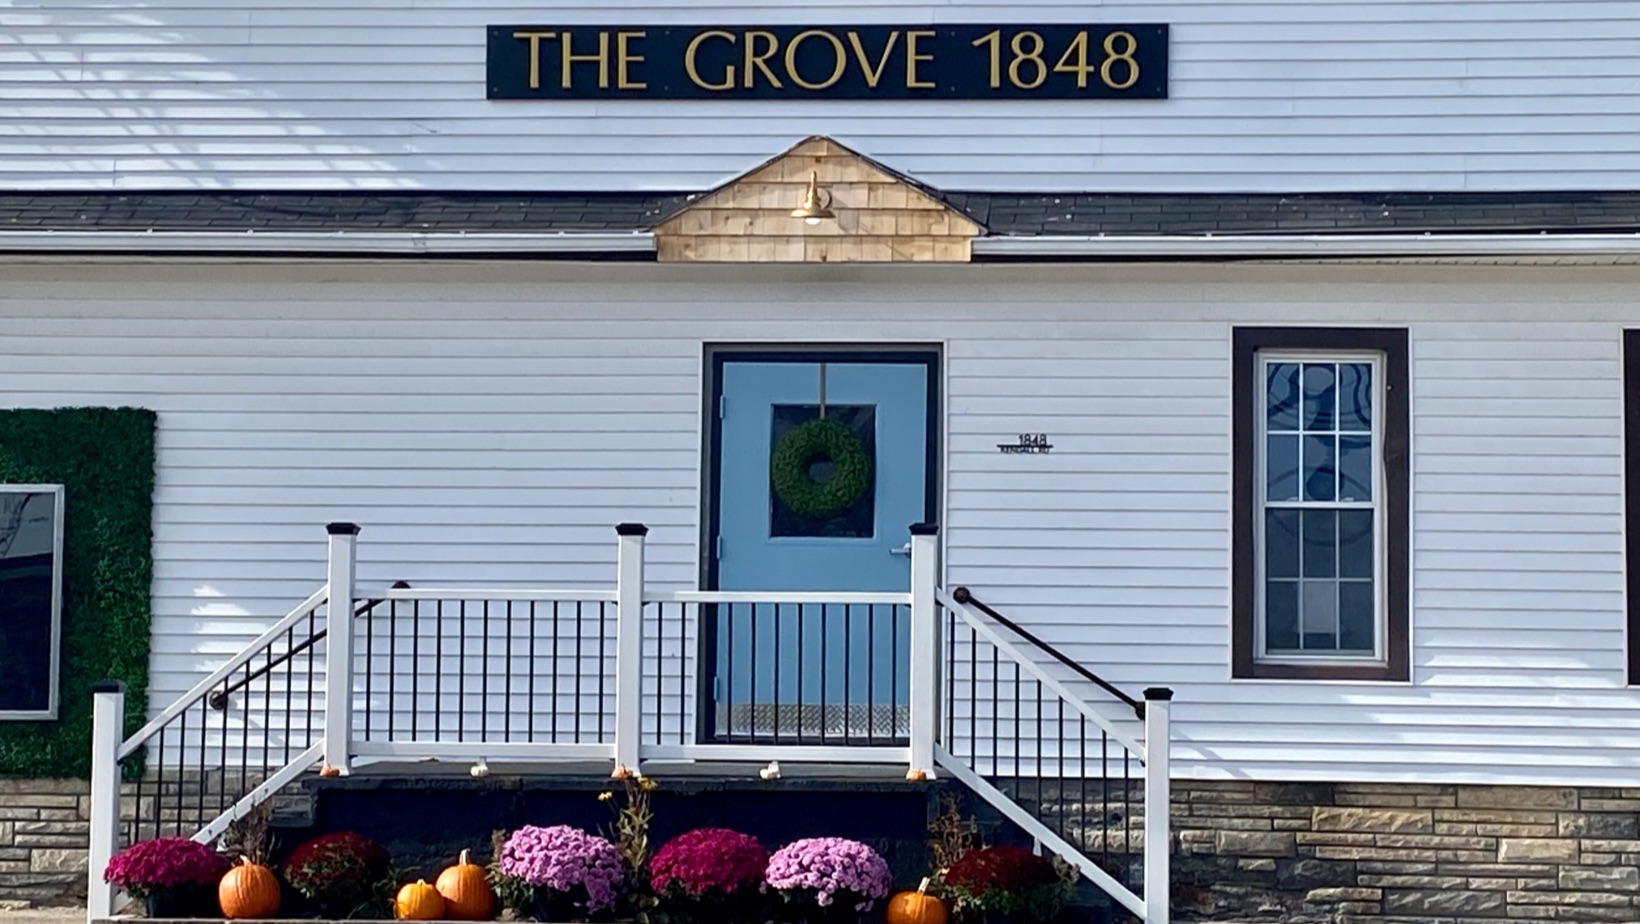 The Grove 1848